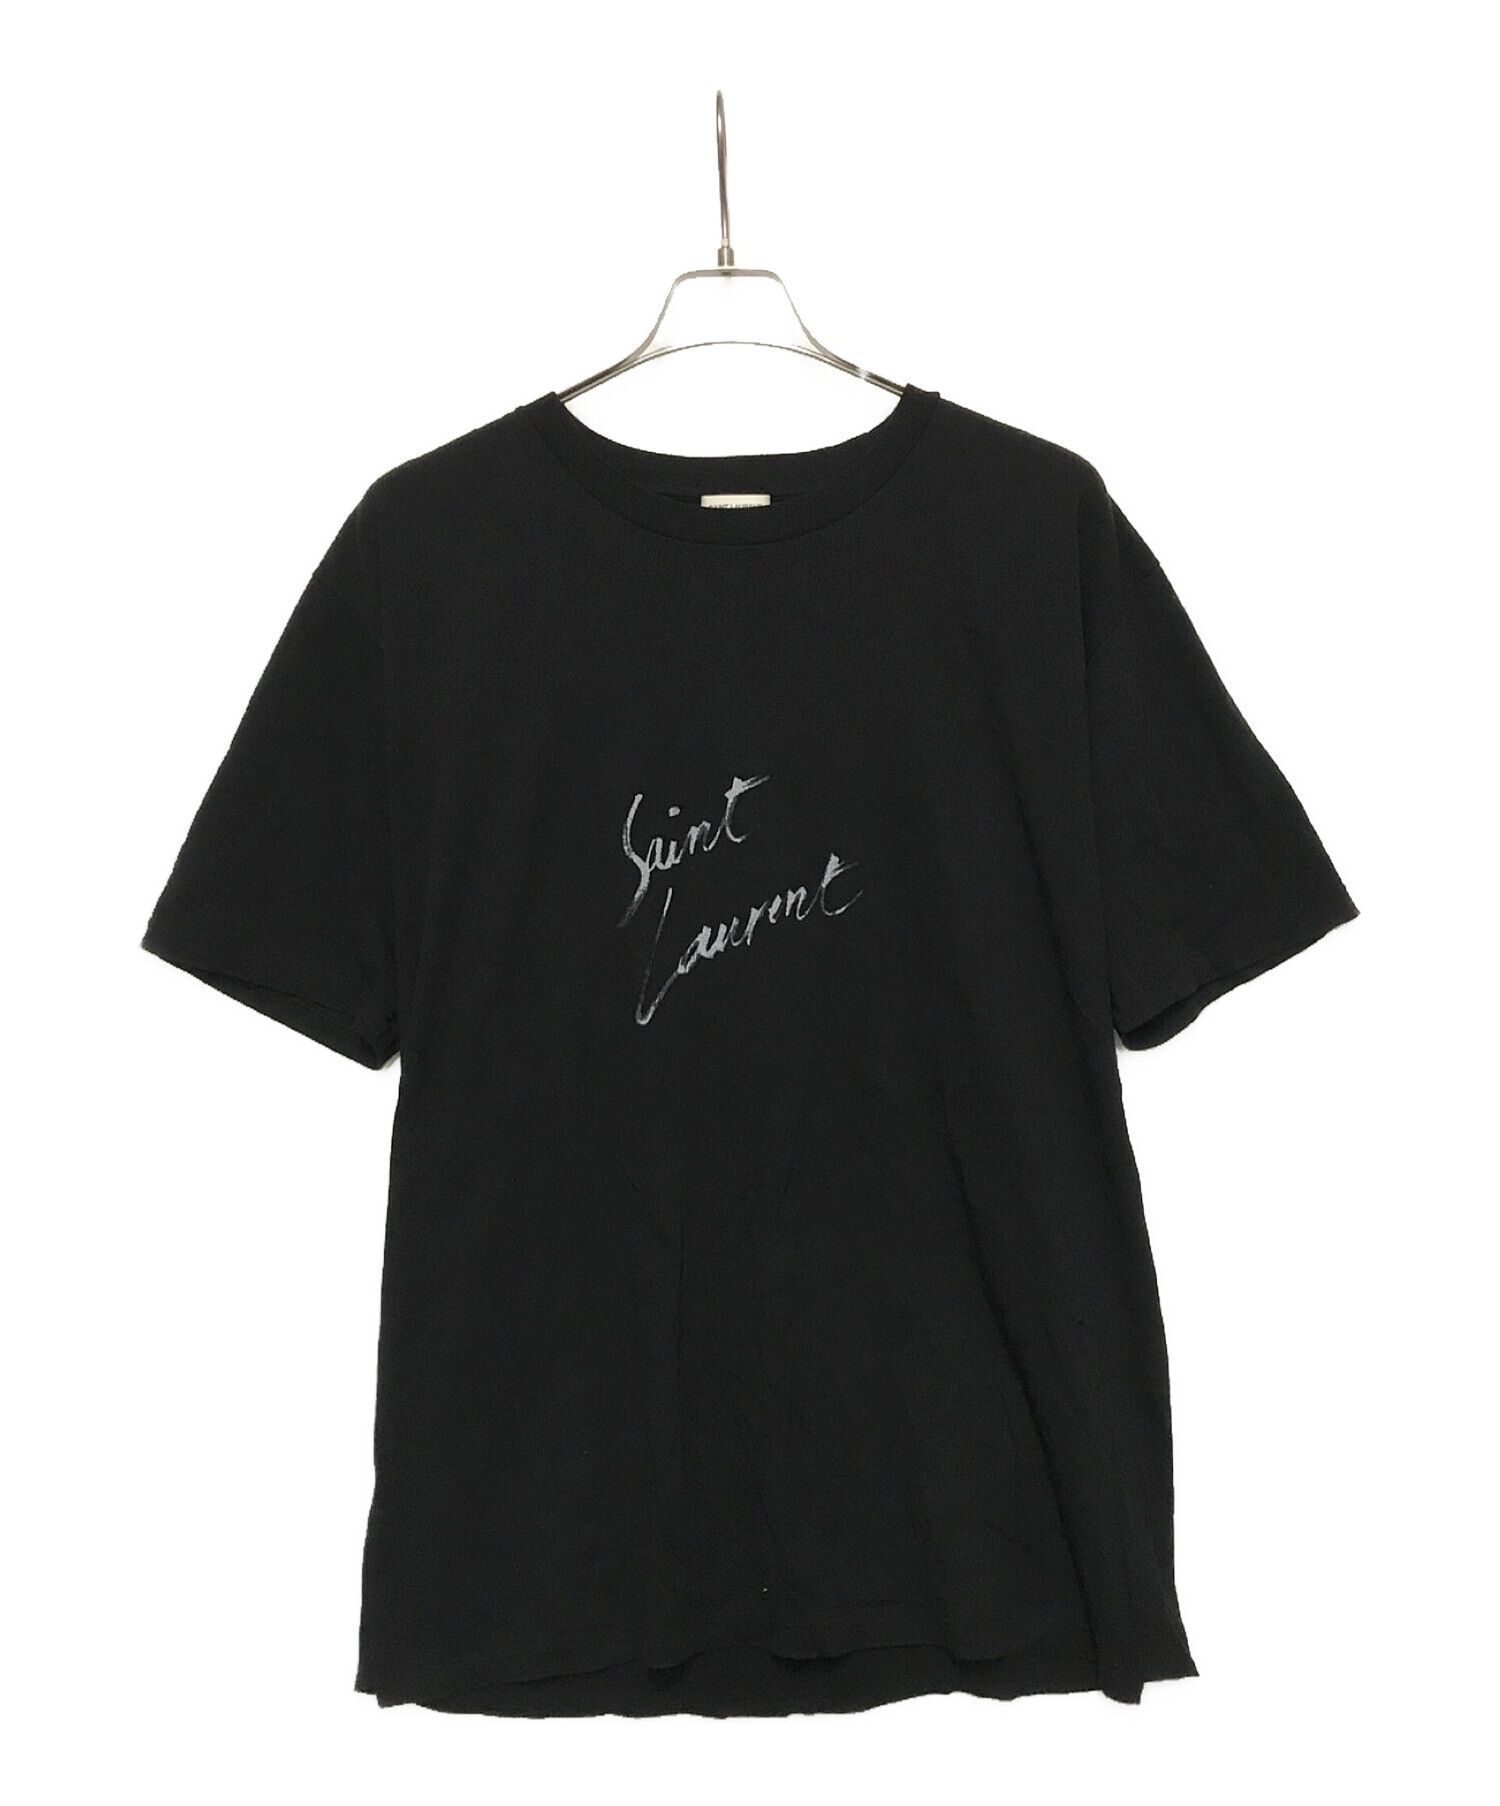 6,000円サンローラン SAINT LAURENT Tシャツ Lサイズ 黒